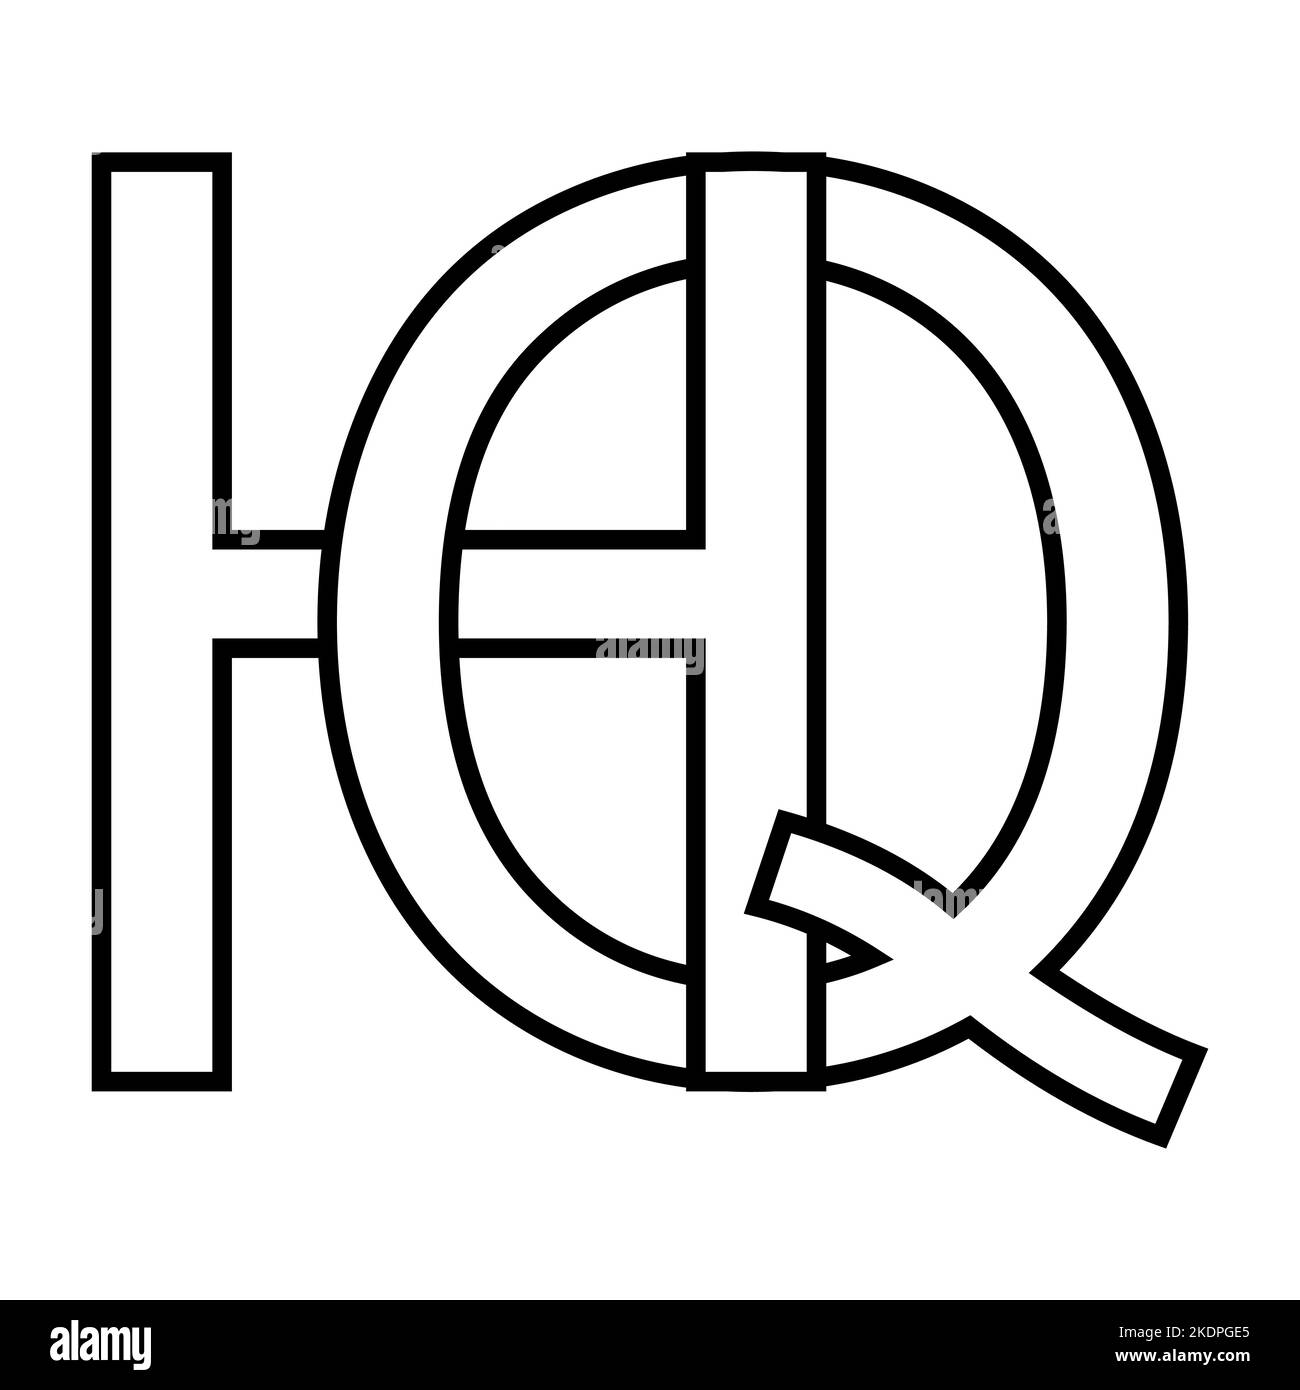 Logo segno hq qh icona nft lettere interlacciate q h Illustrazione Vettoriale